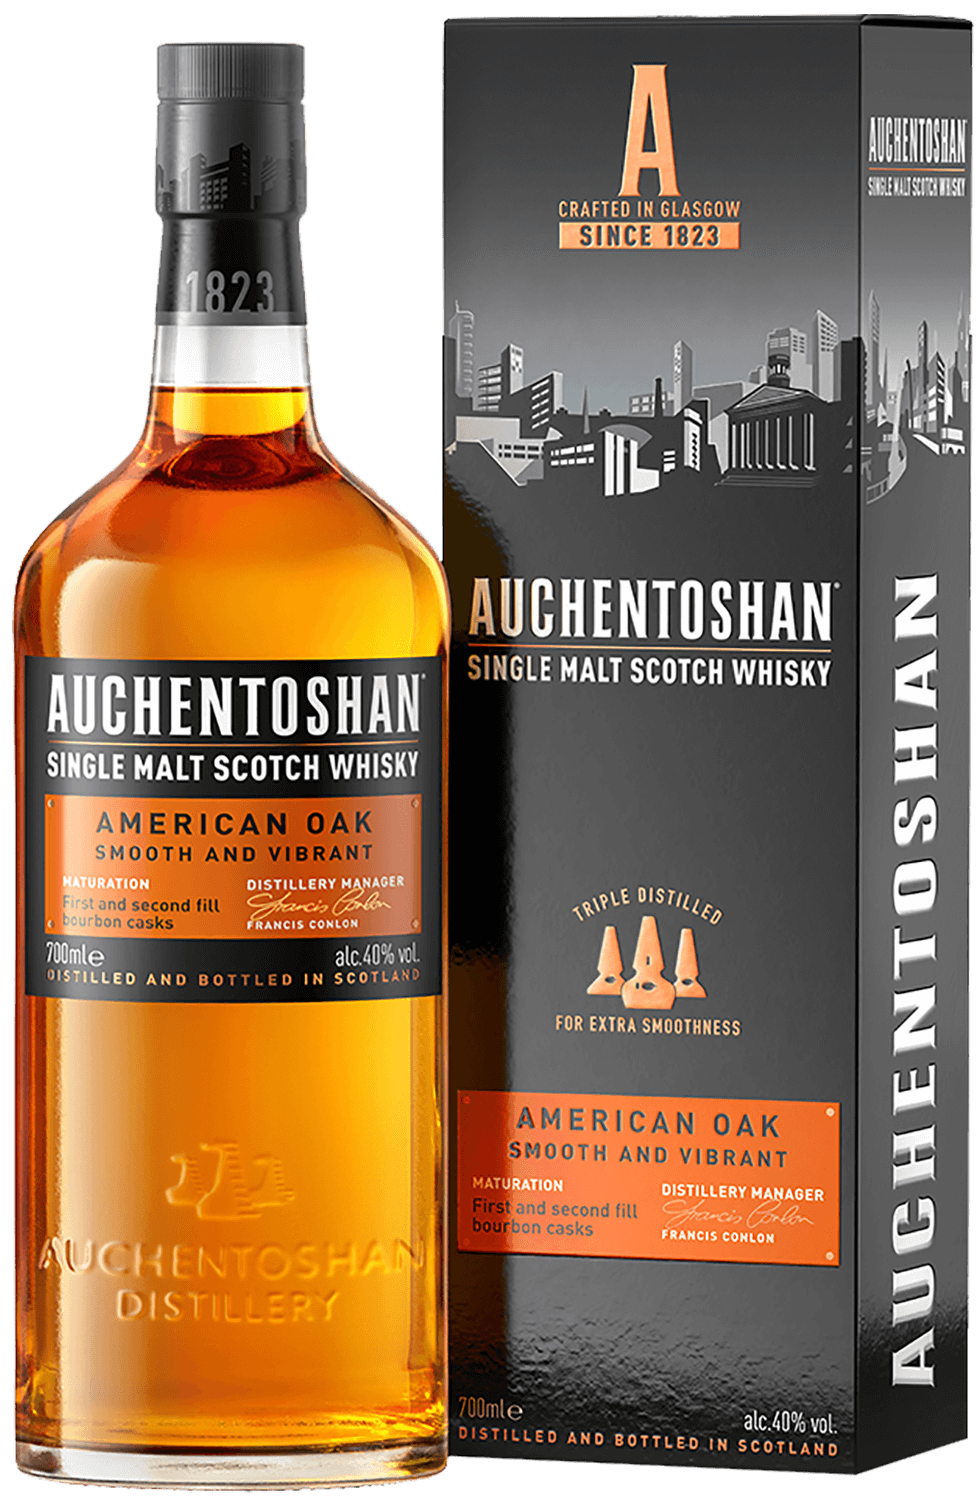 Auchentoshan American Oak Single Malt Scotch Whisky (gift box) glenfiddich rich oak 14 y o single malt scotch whisky gift box